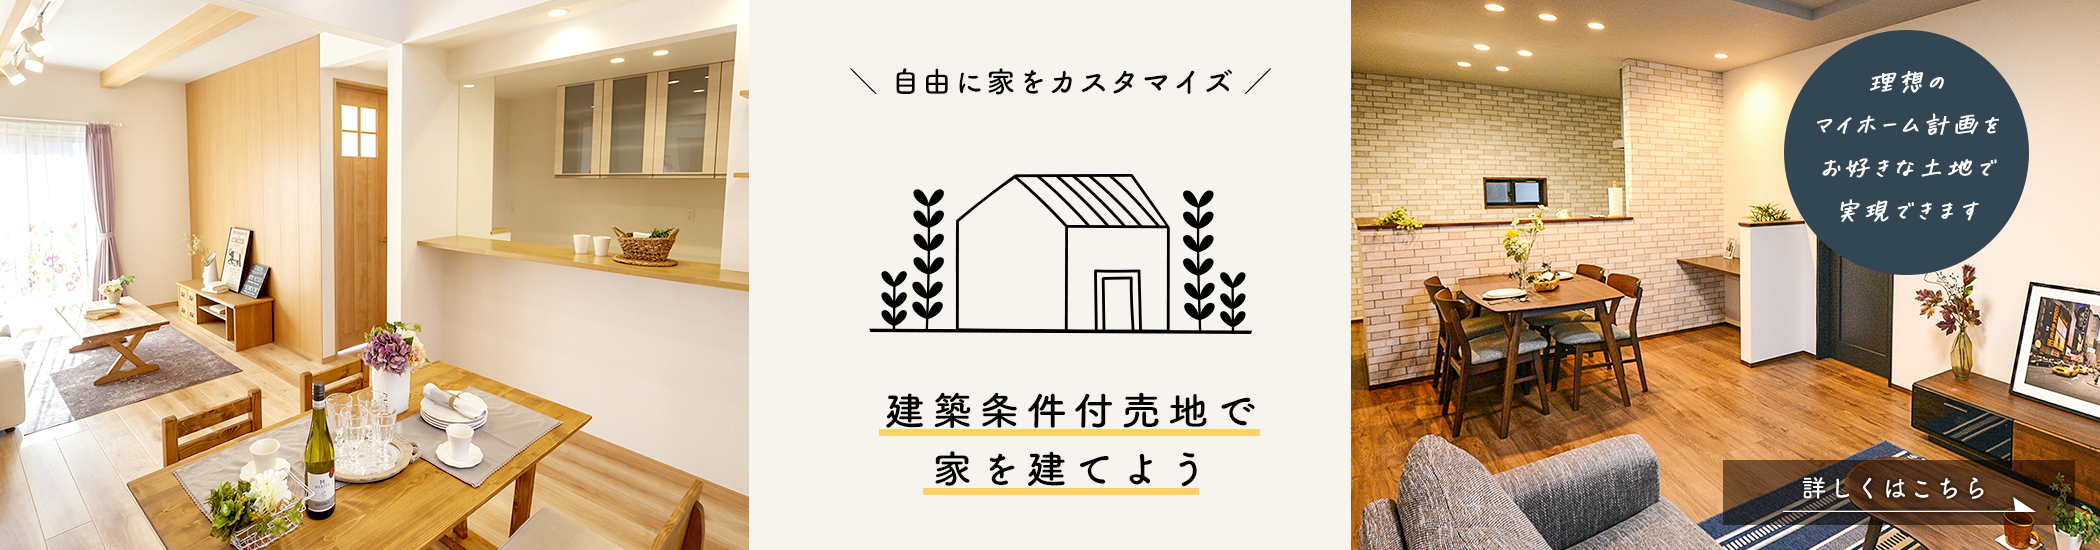 “建築条件付き売地”